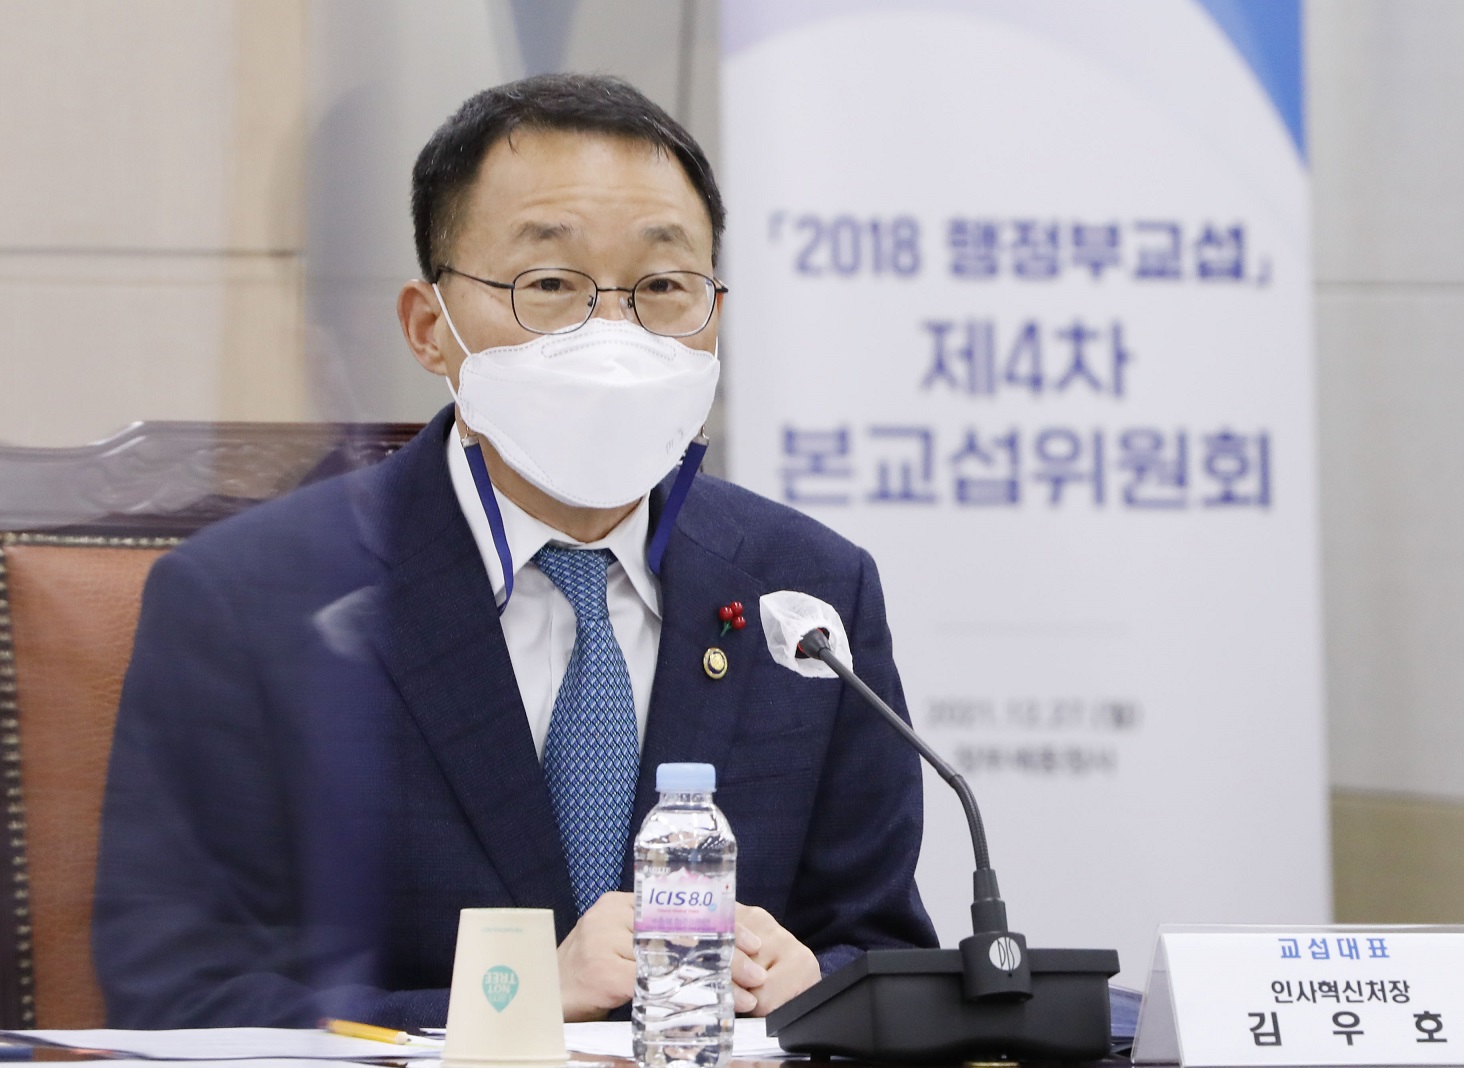 '2018 행정부 교섭' 단체협약  체결식에 참석한 김우호 인사혁신처장 발언 하는 모습.